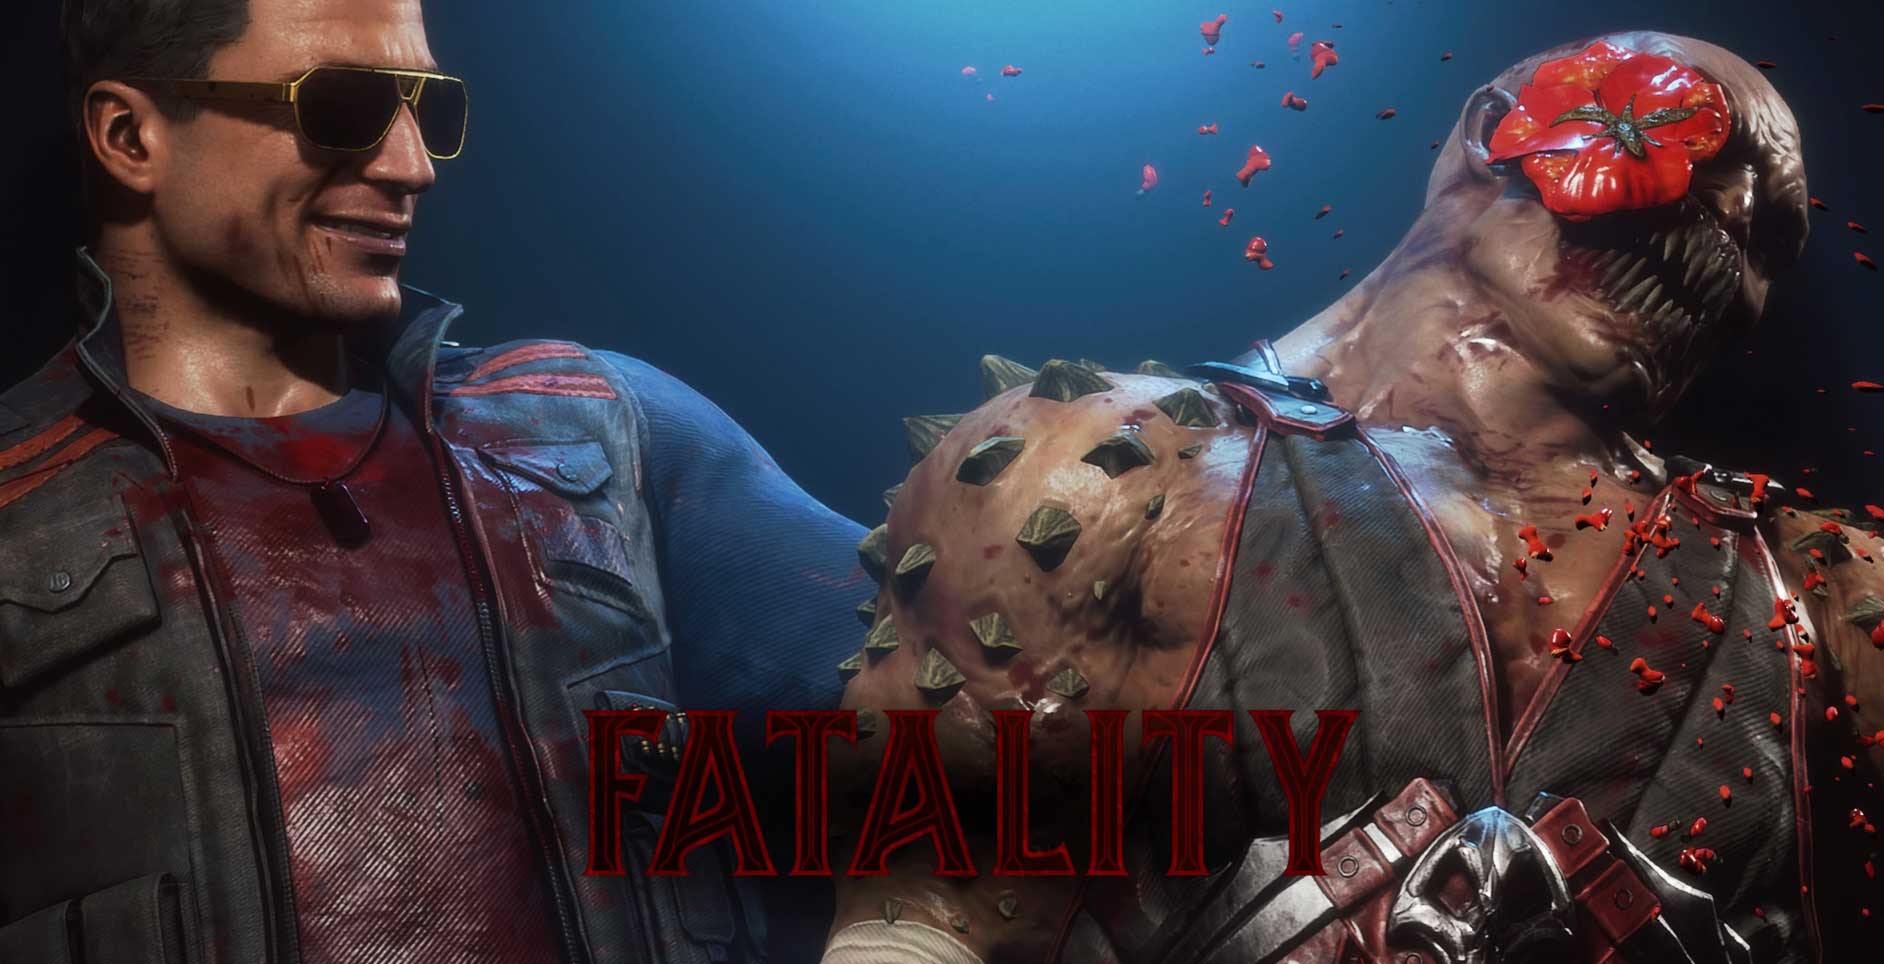 Os Fatalities Mais Engraçados de Mortal Kombat - Podcast Los Chicos